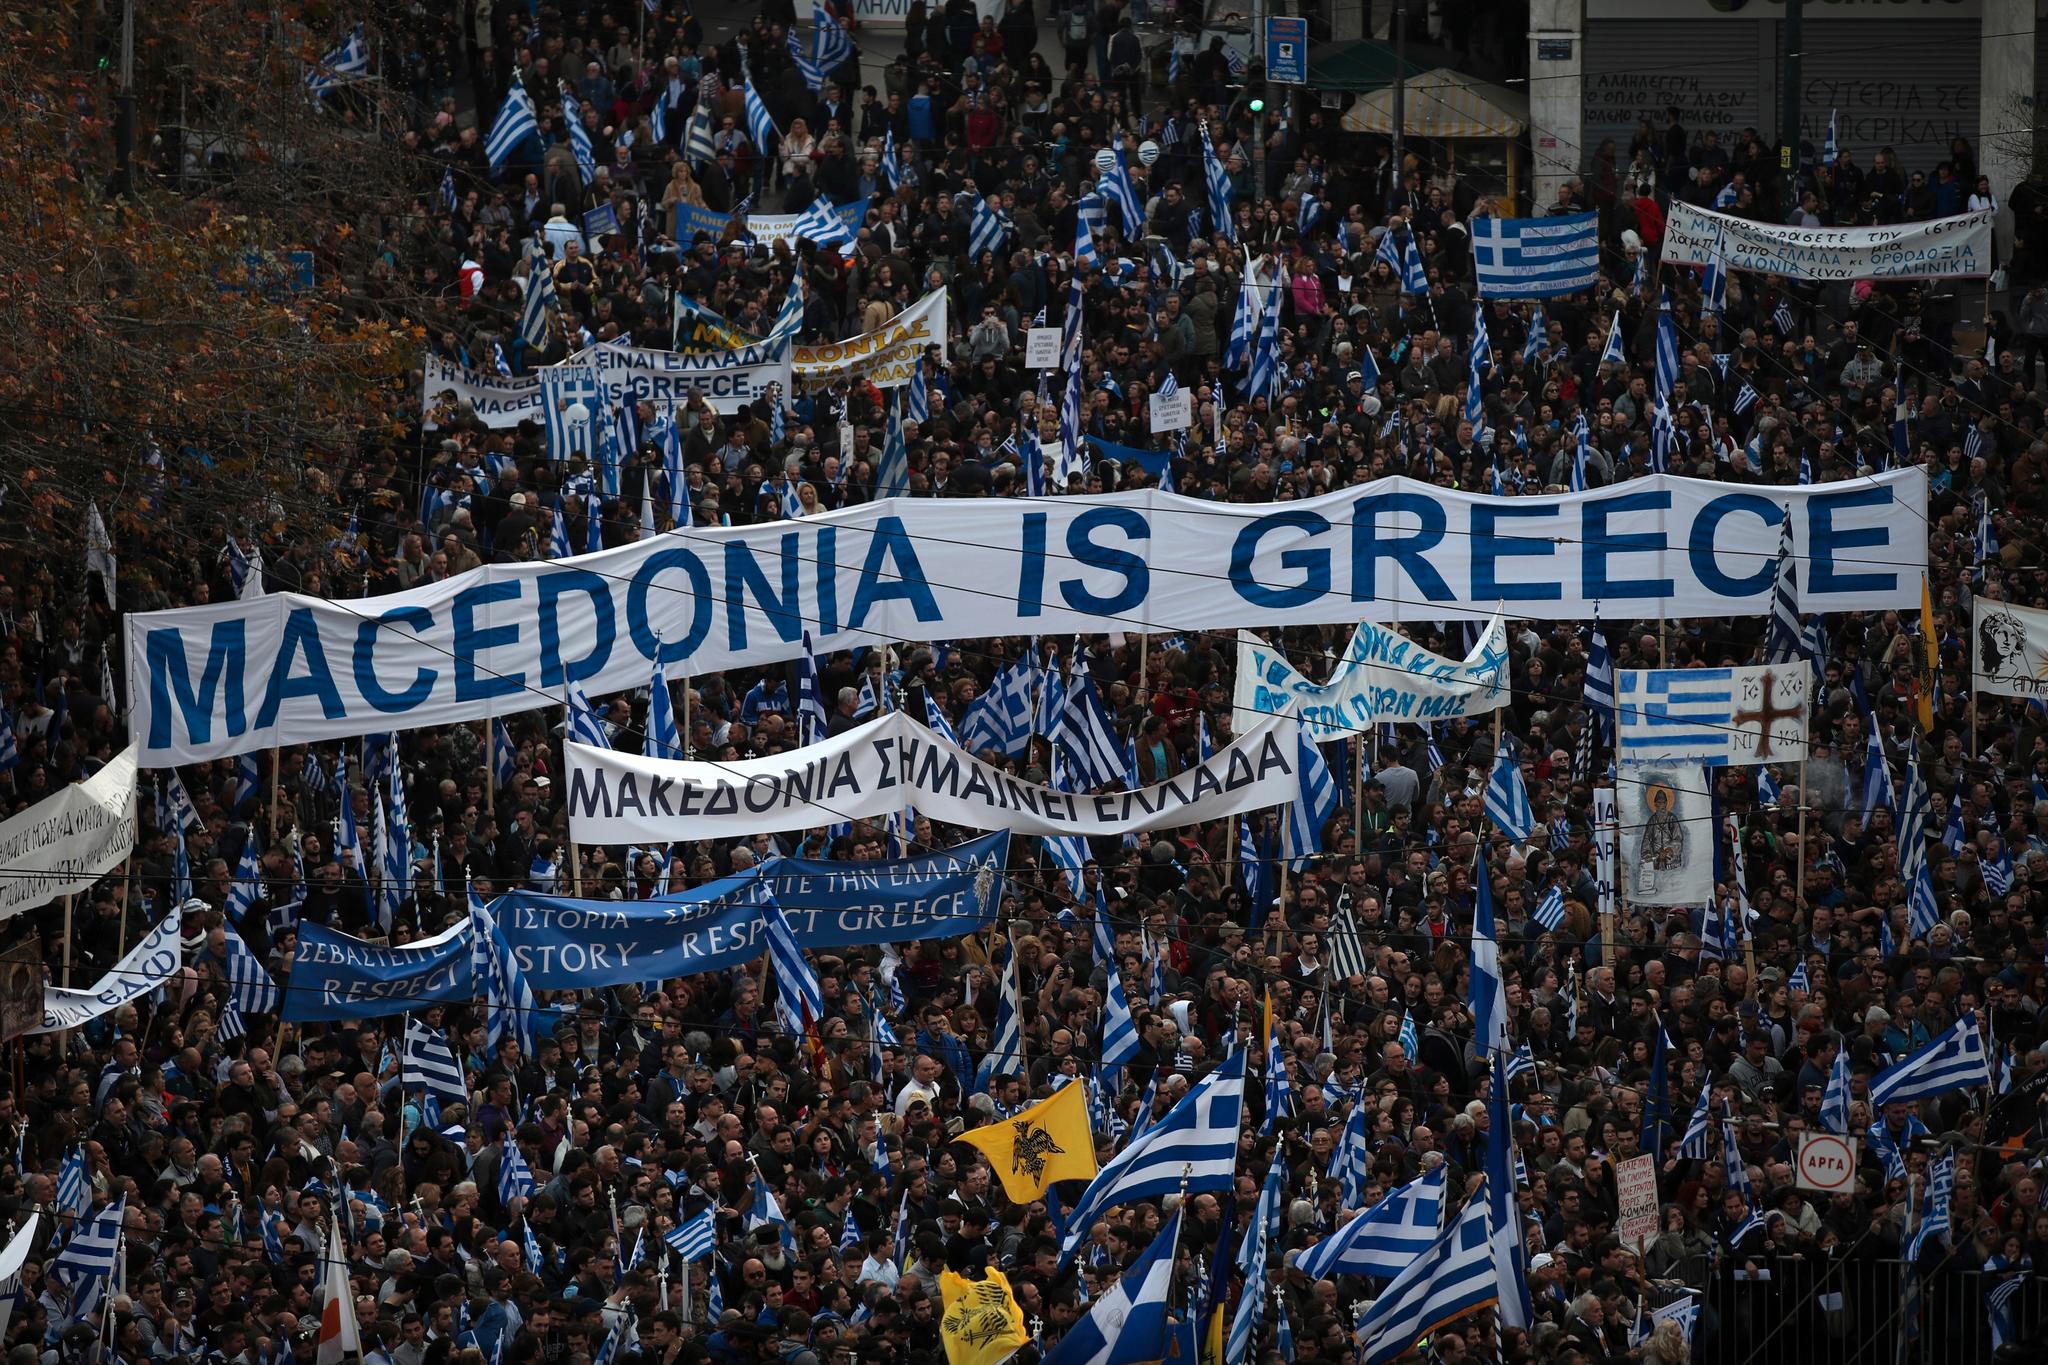 Over 100.000 grekere samlet seg i Athen i februar for å demonstrere mot stedsnavnet Makedonia. Uløste grensetvister og etniske konflikter kan i verste fall true freden på det europeiske kontinentet, skriver Christian S. Molstad.